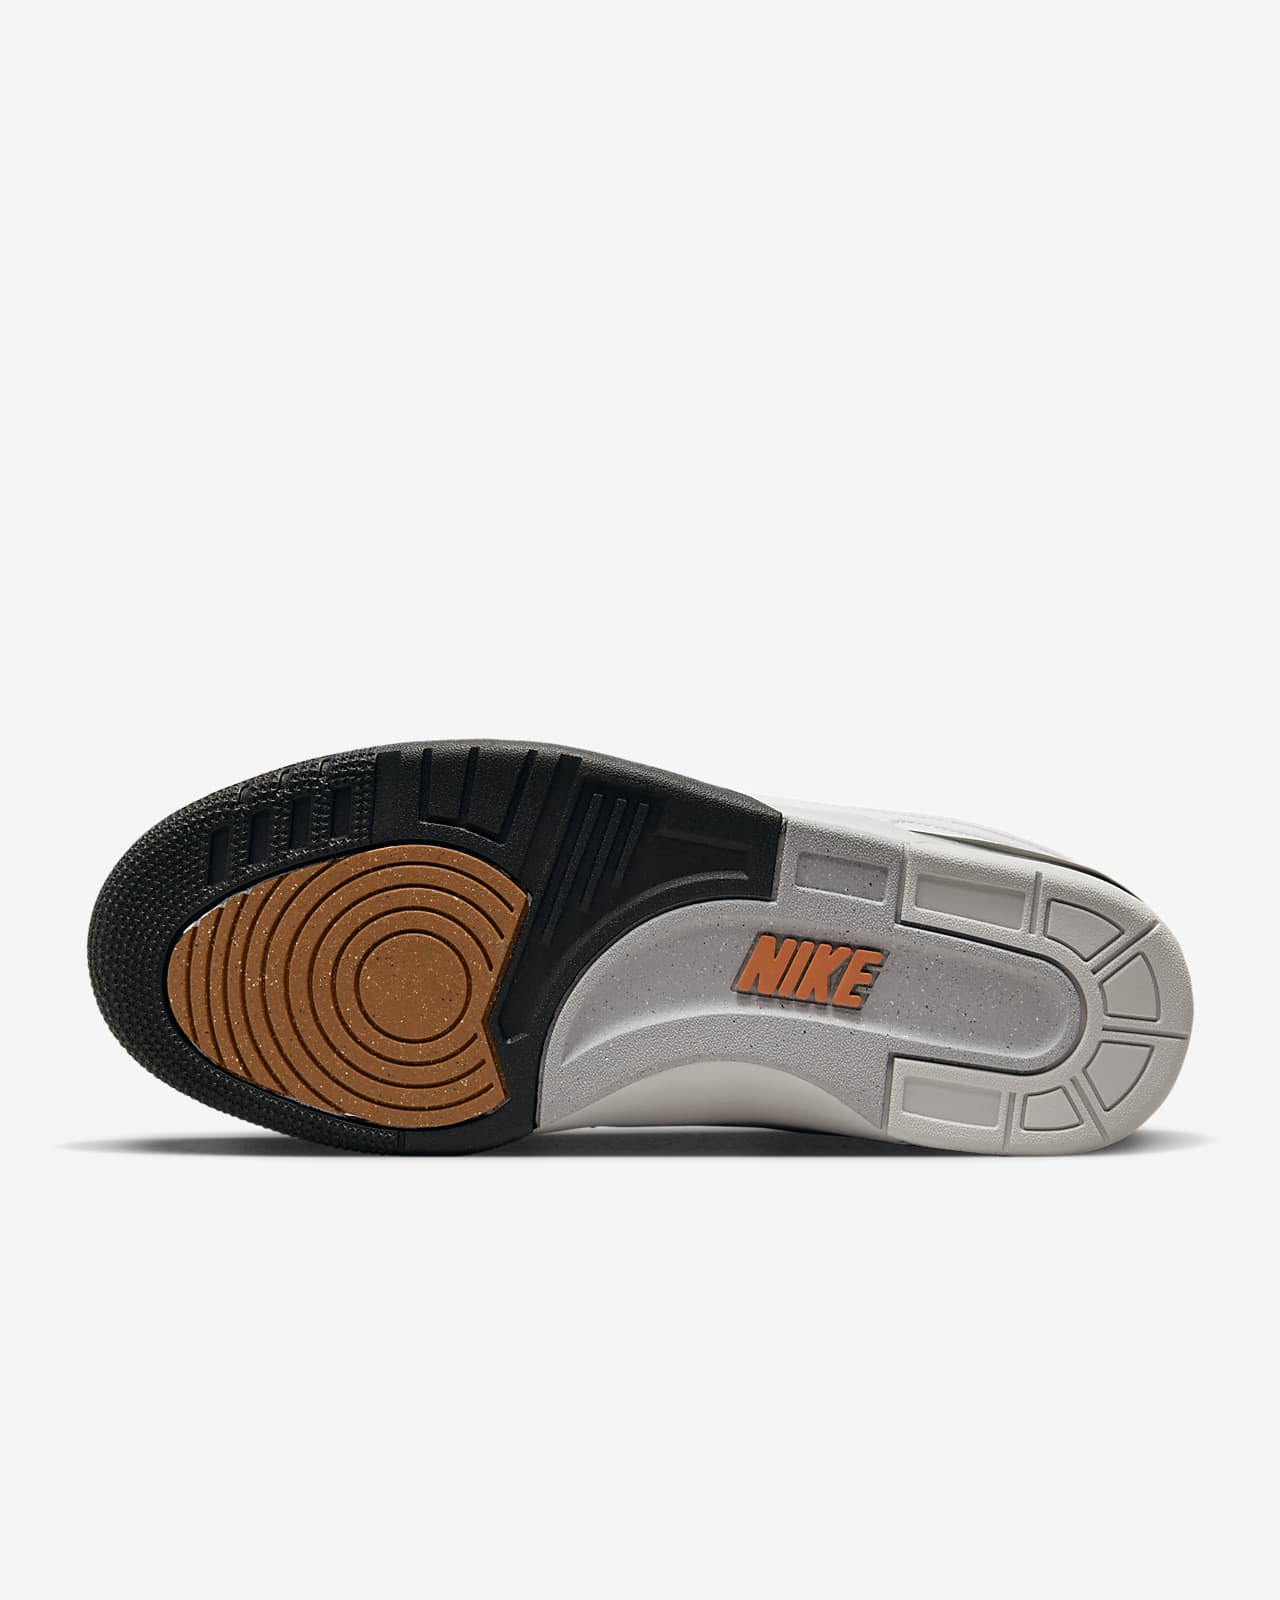 Sanders Summen offer Nike Air Alpha Force 88 x Billie Men's Shoes. Nike.com